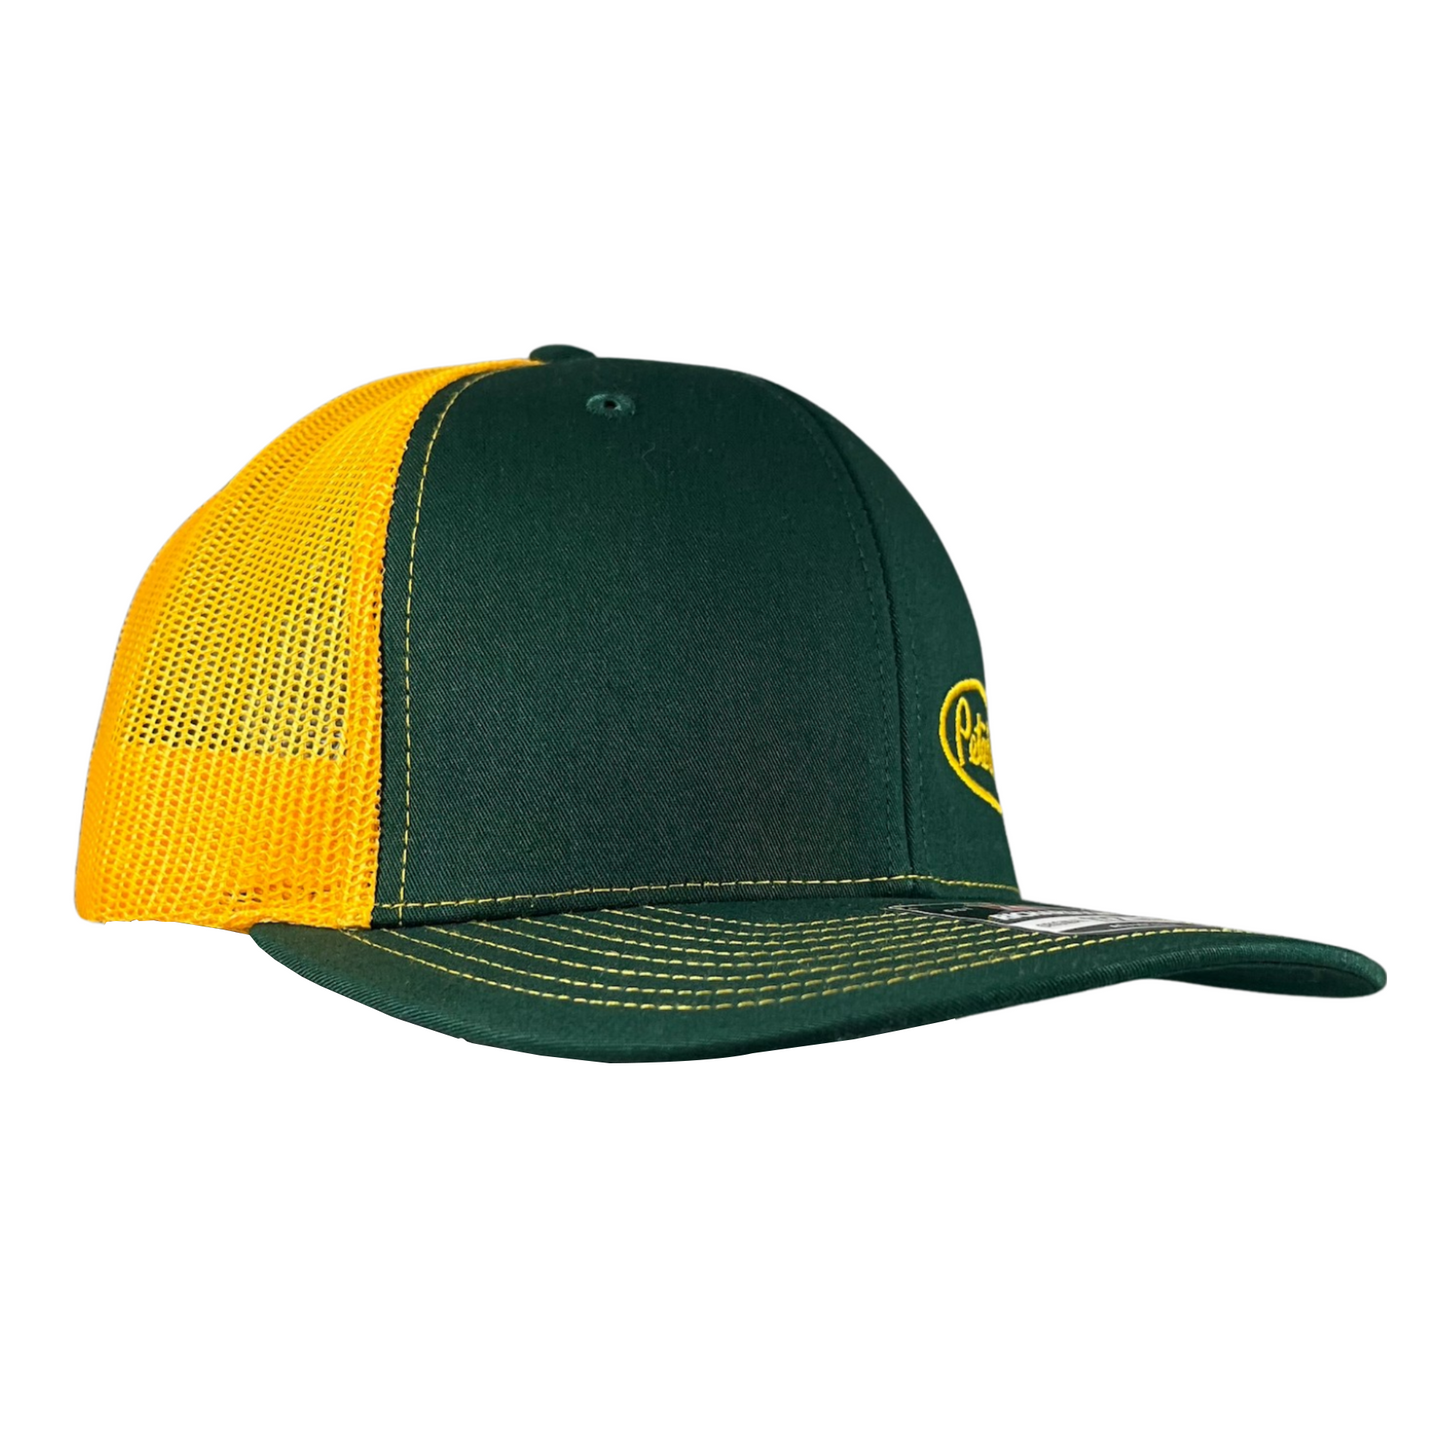 Classic Forest Green and Yellow Peterbilt logo Trucker Cap